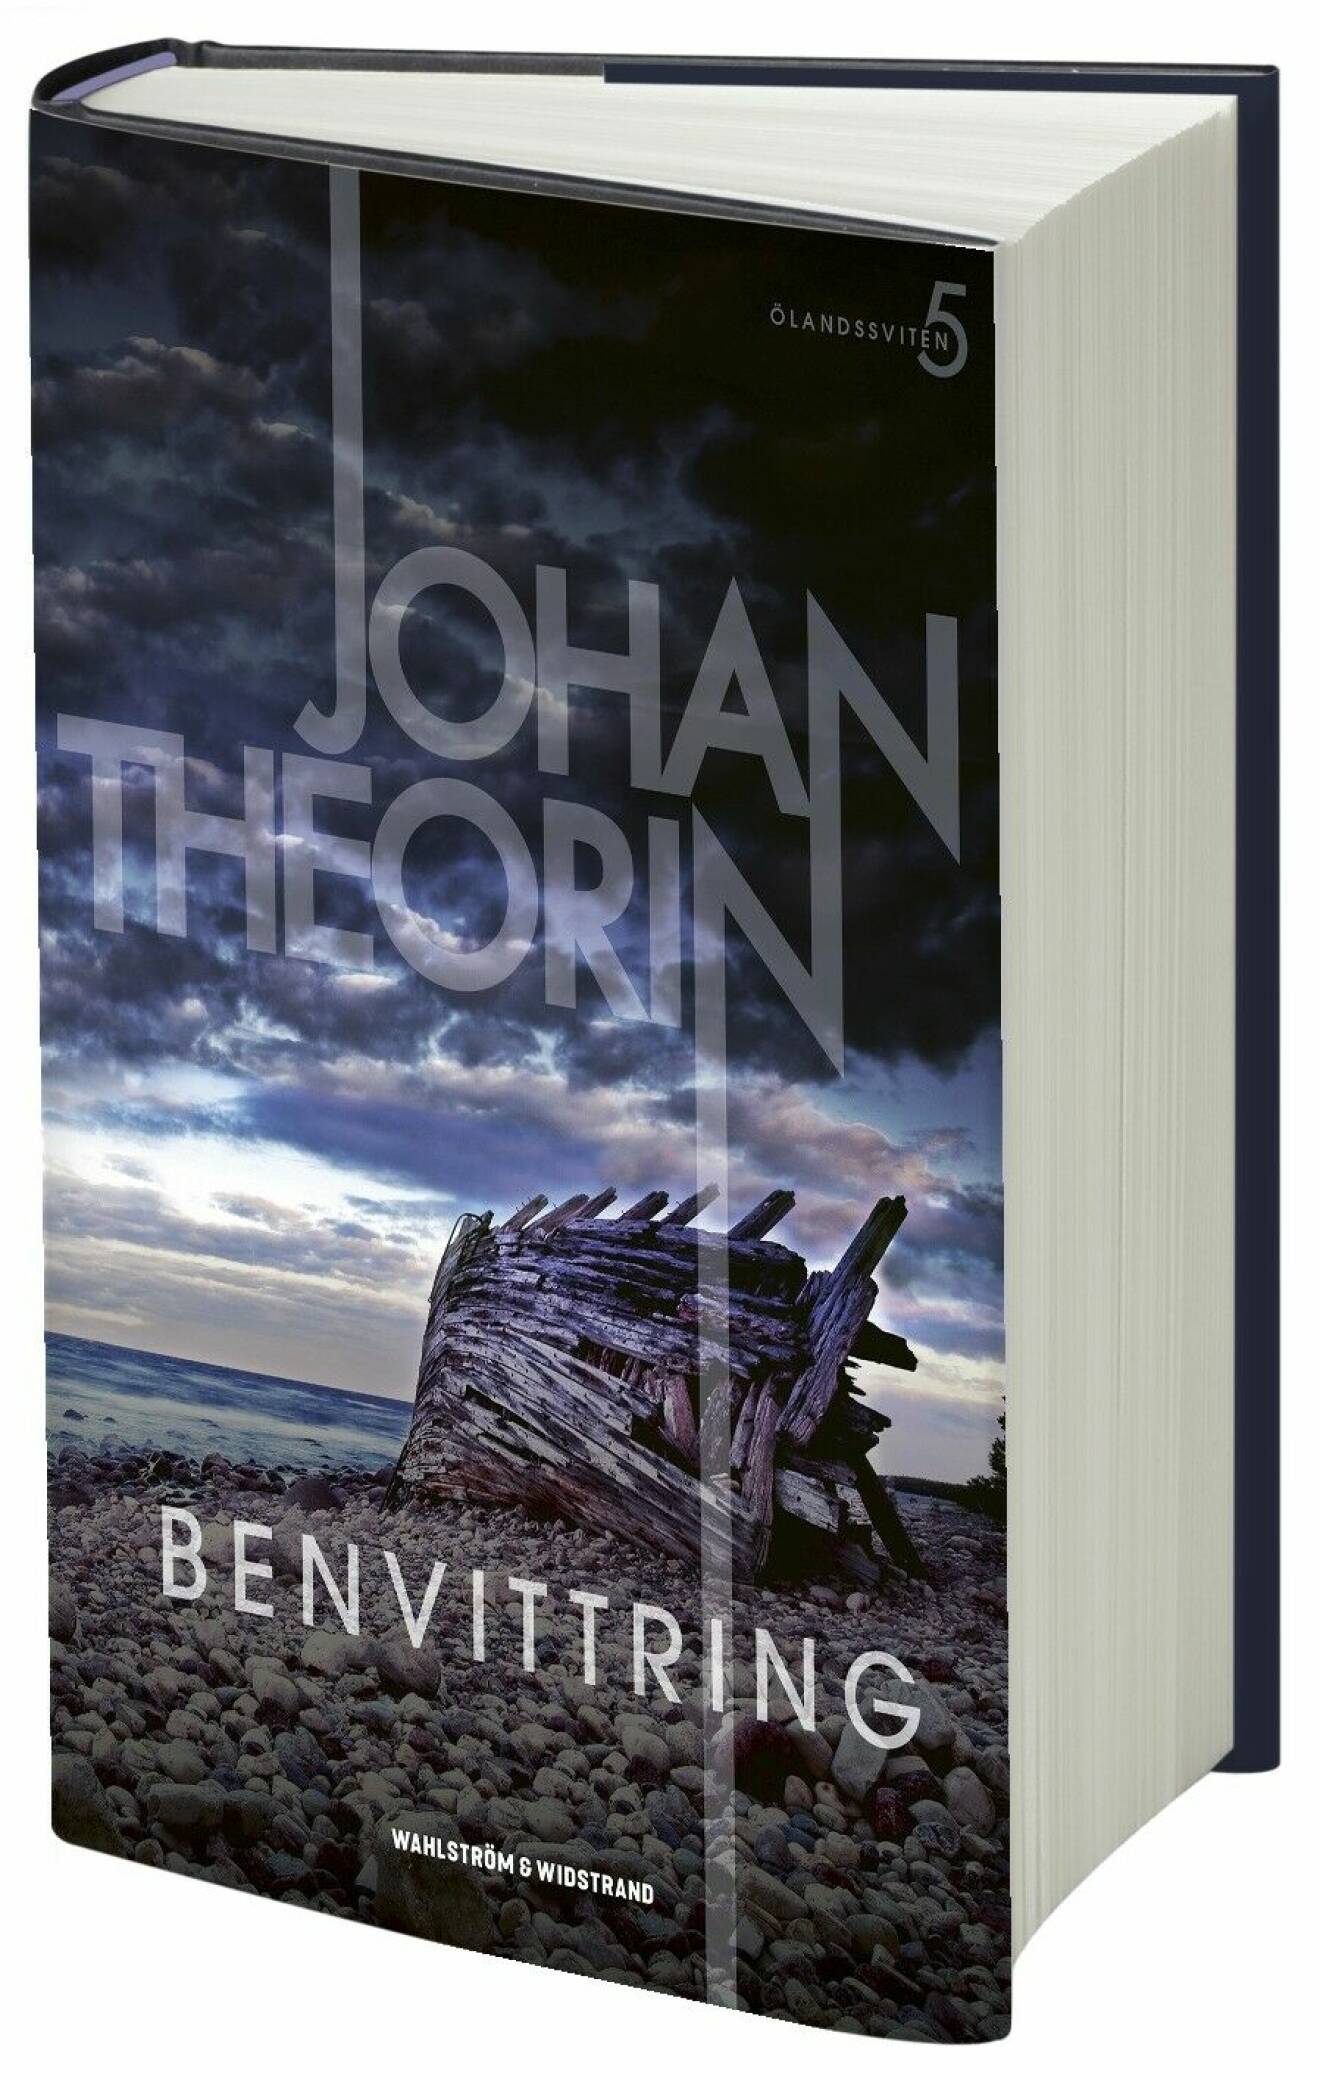 Bokomslag Benvittring av Johan Theorin